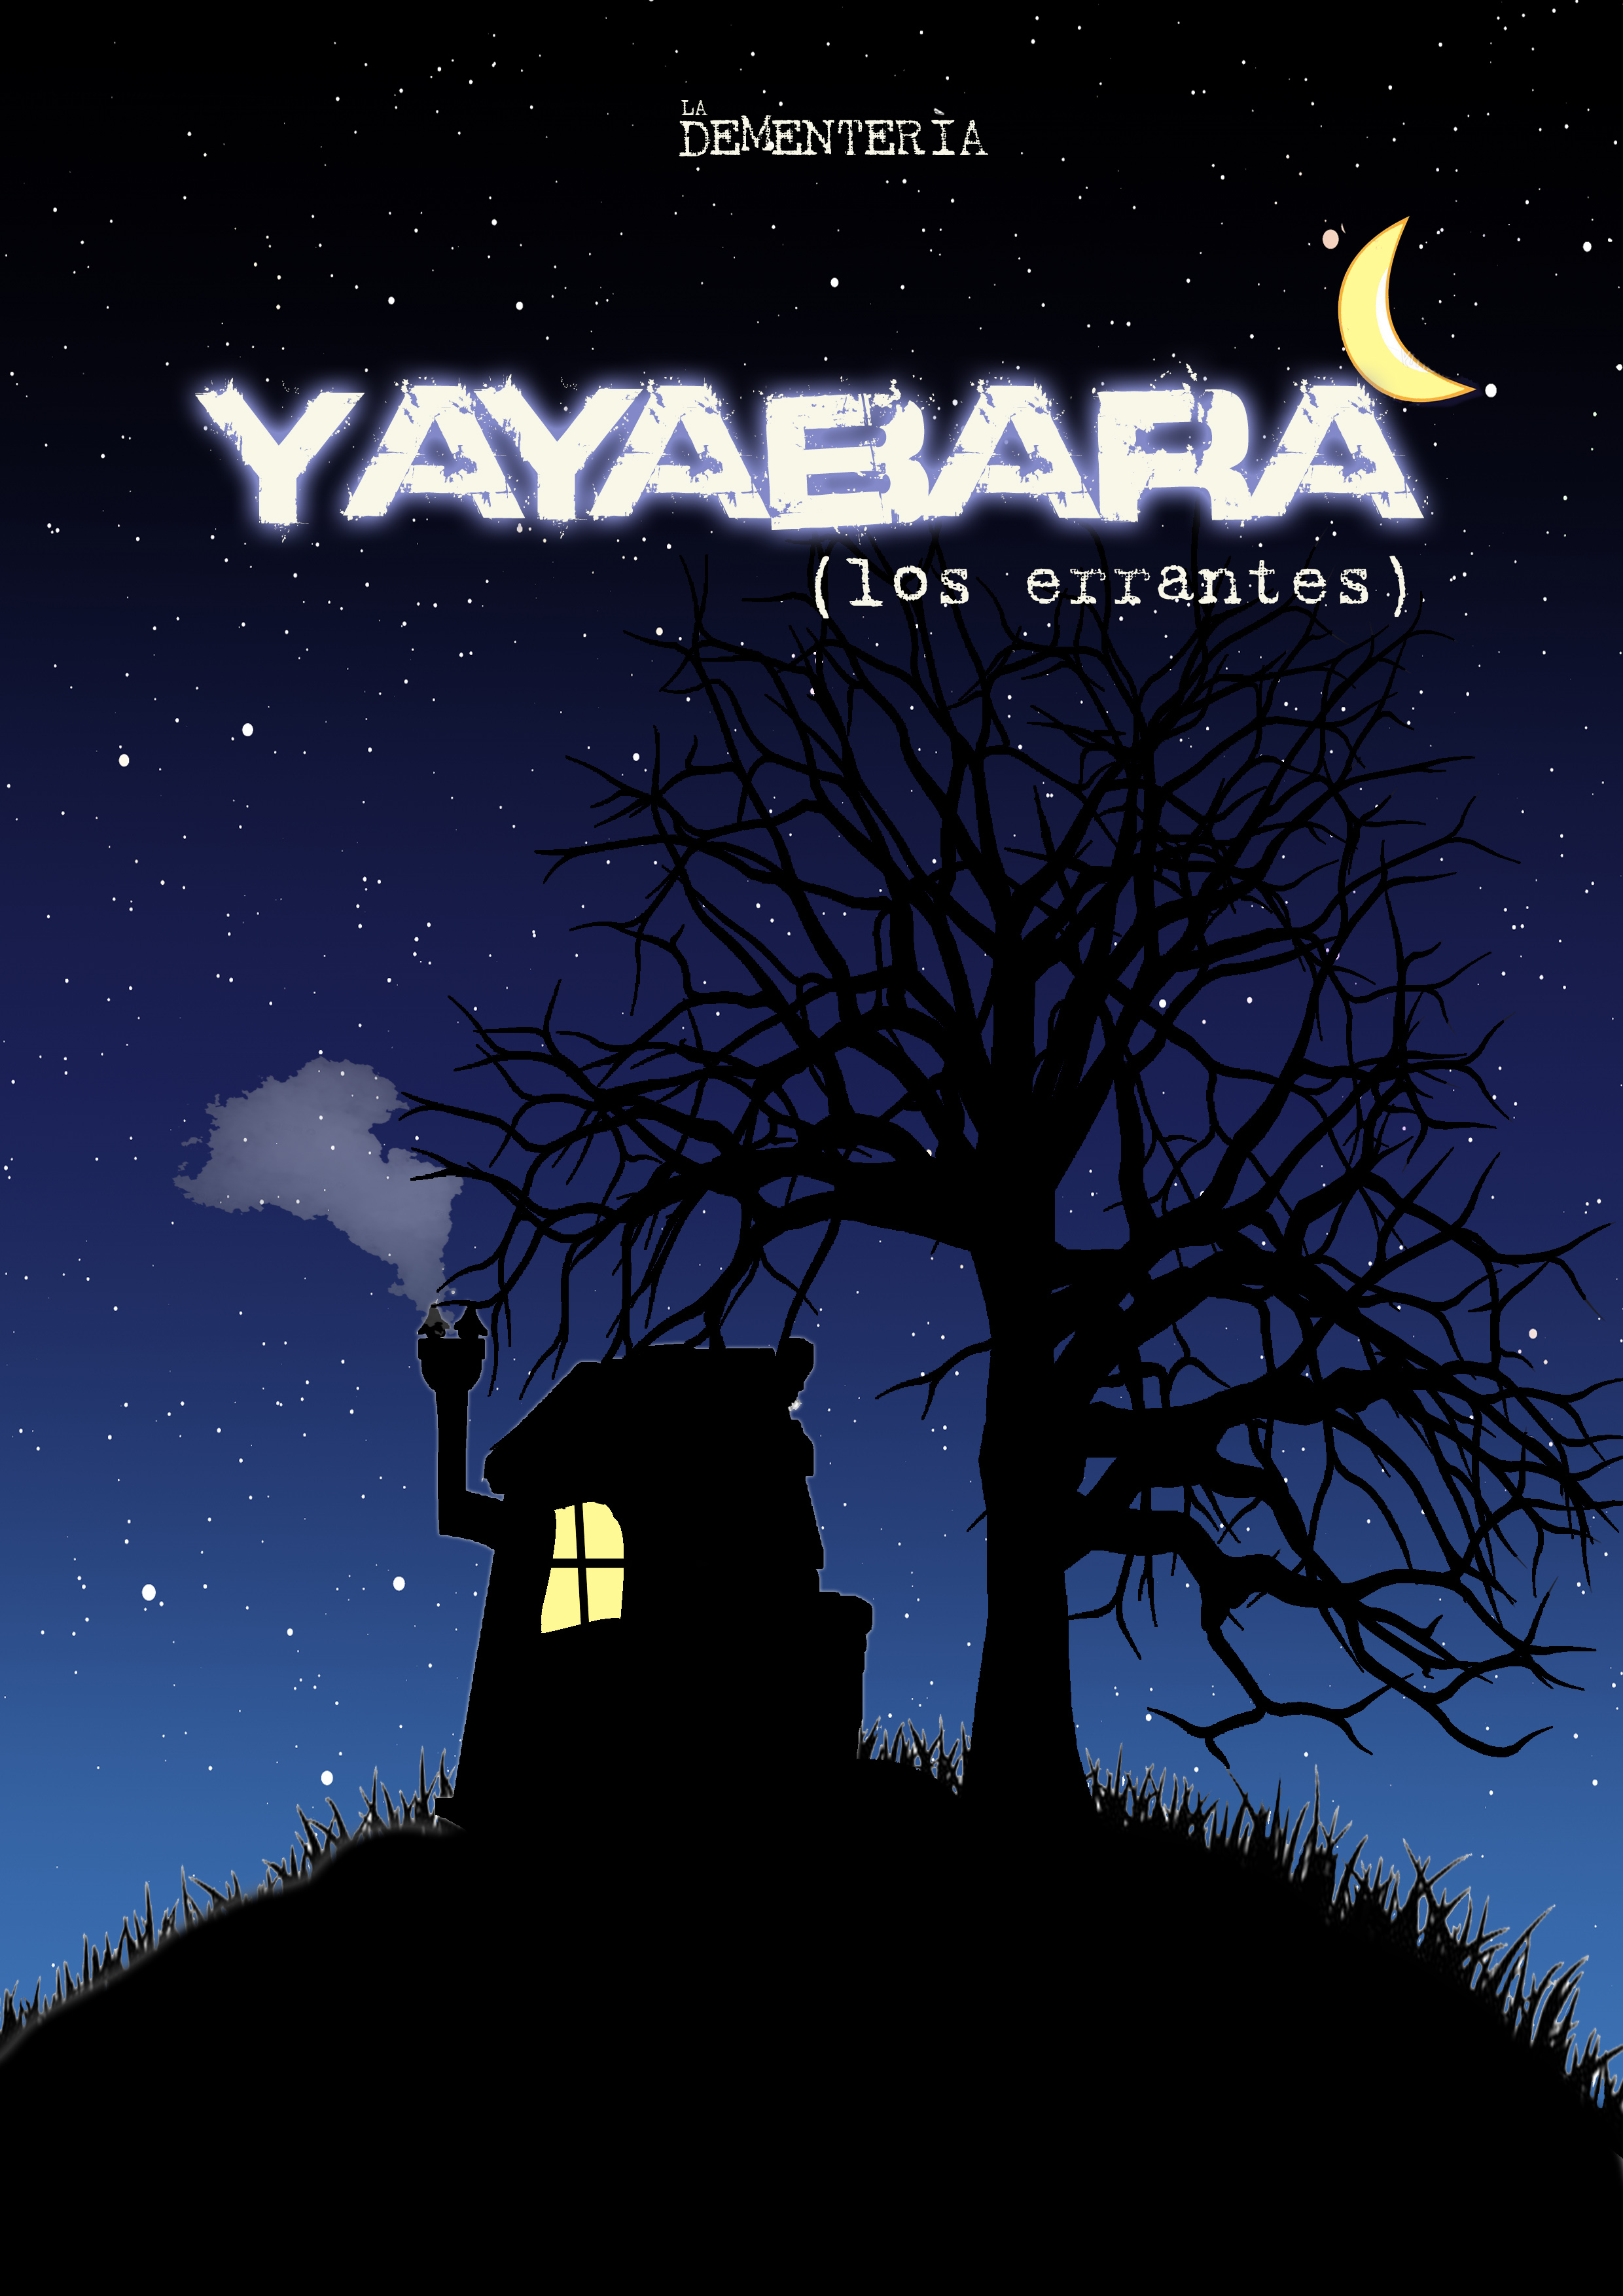 Yayabara (los errantes) - La Dementería (Sevilla) 